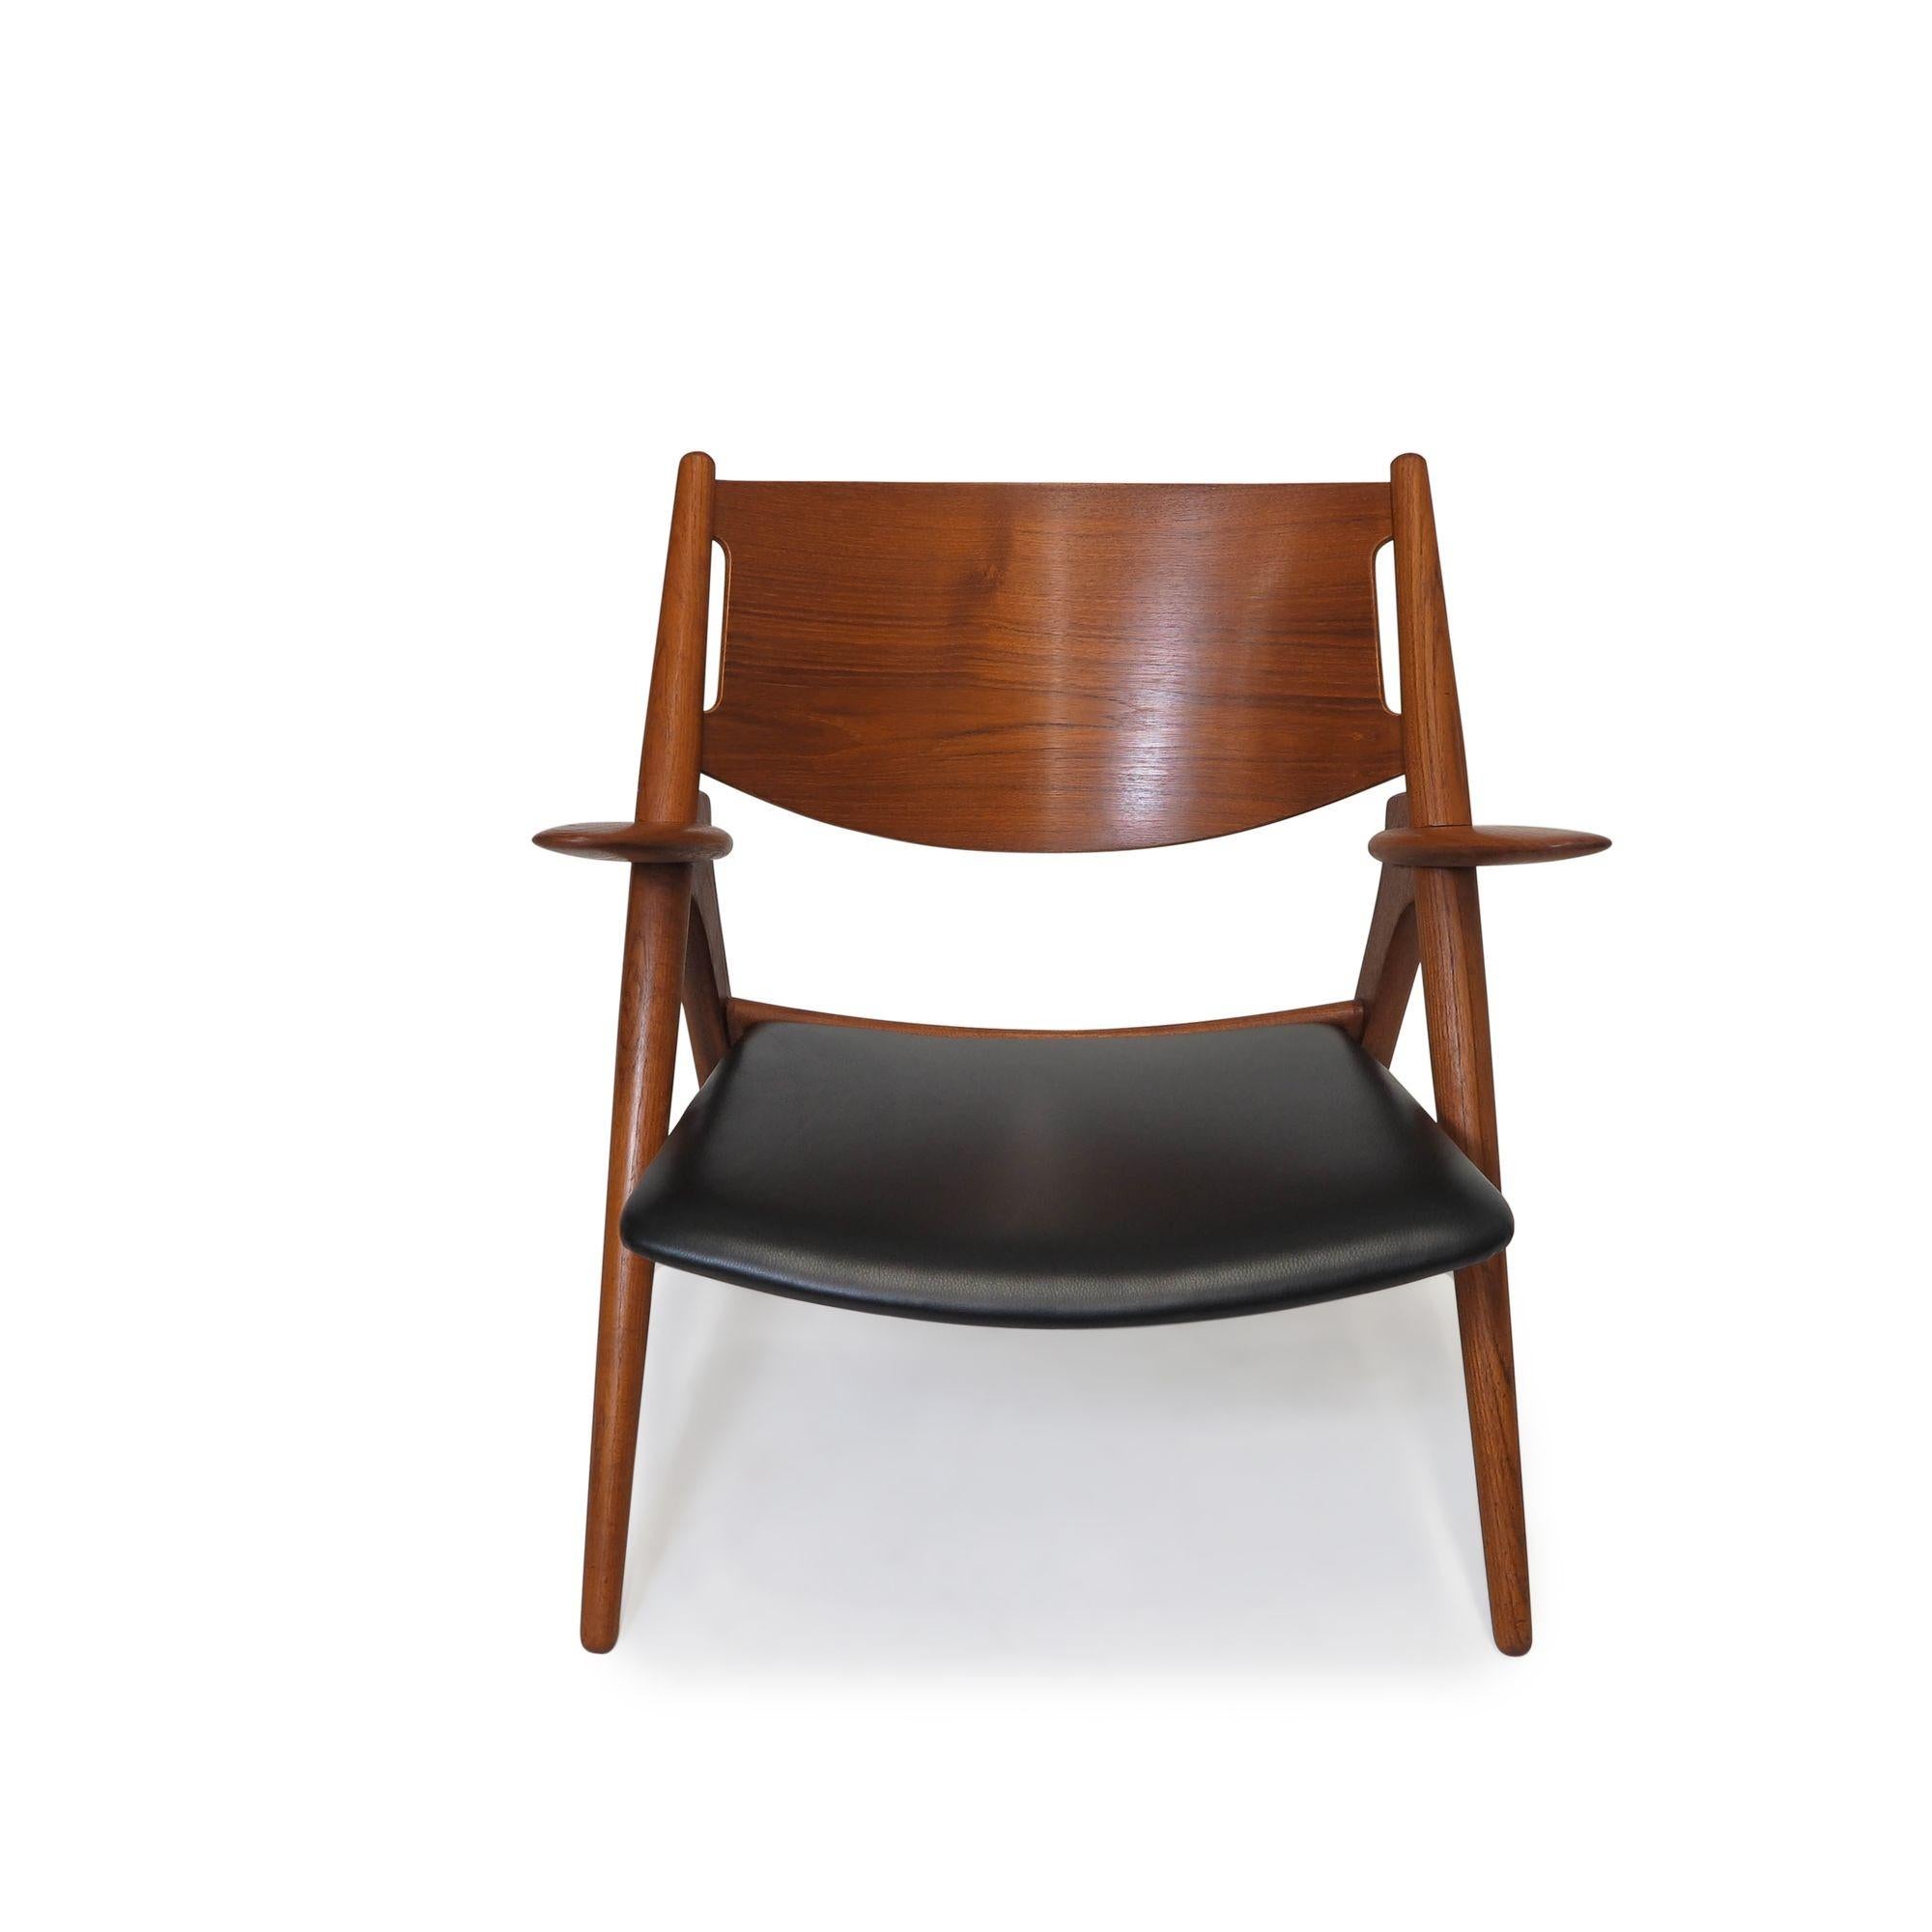 Scandinavian Modern Pair of Sawbuck Chairs, CH28, by Hans Wegner, 1951